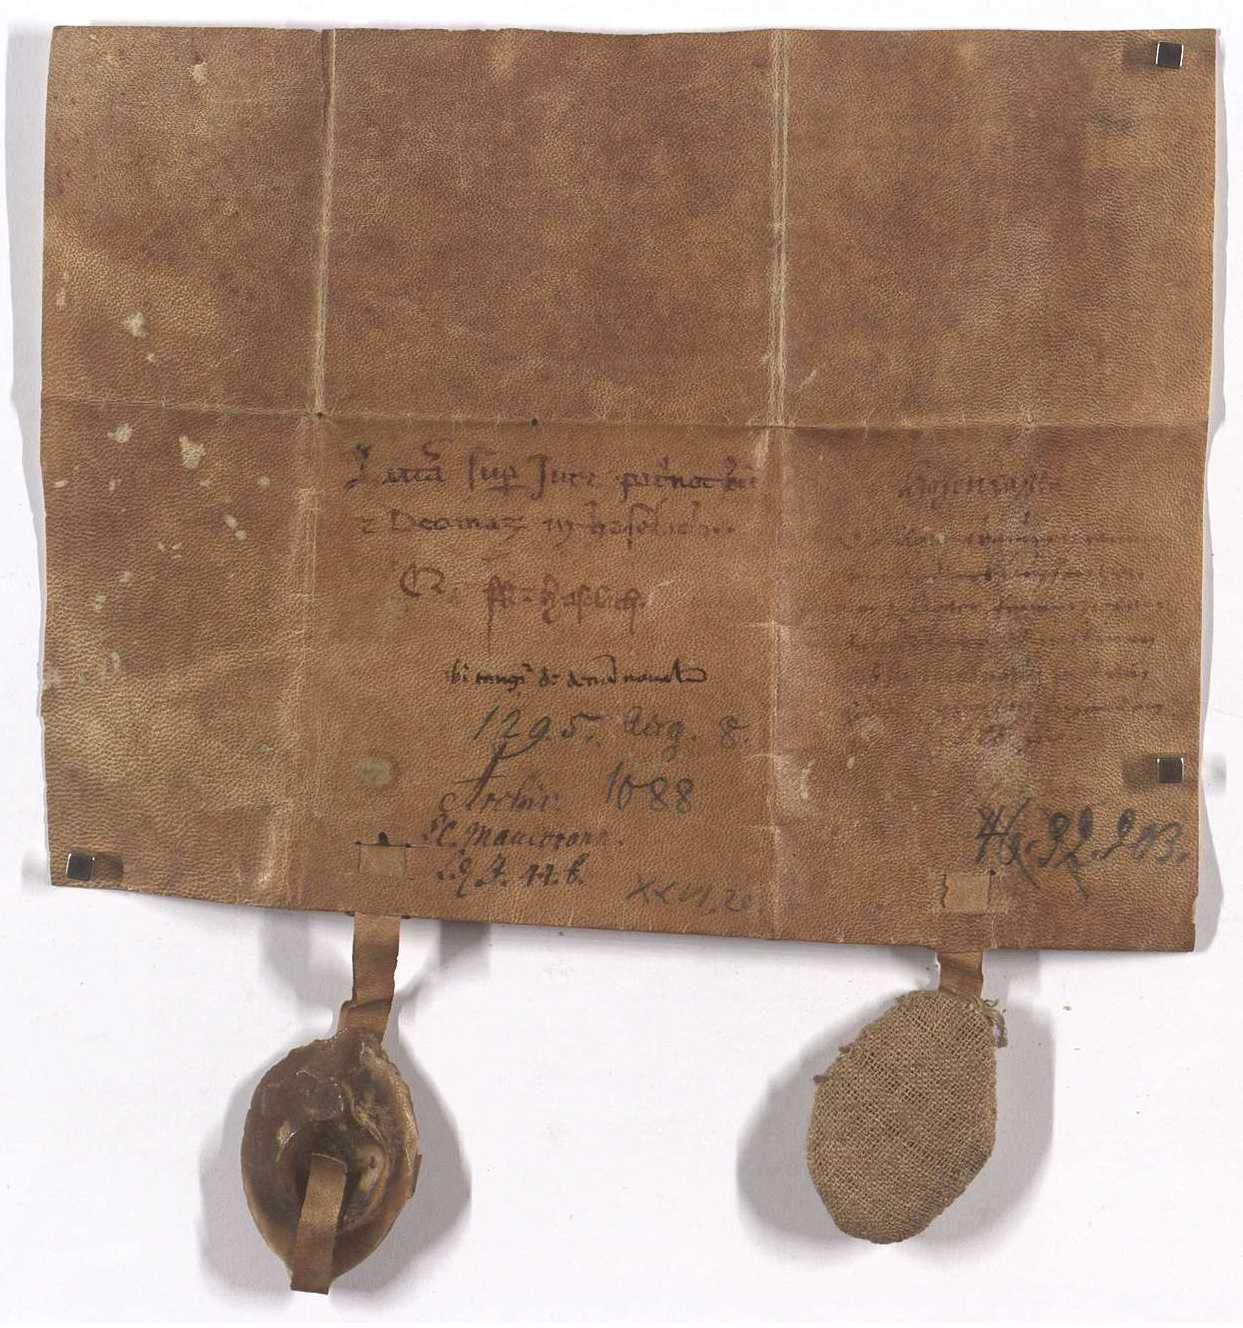 Urkunde vom 8. August 1295 Rückseite